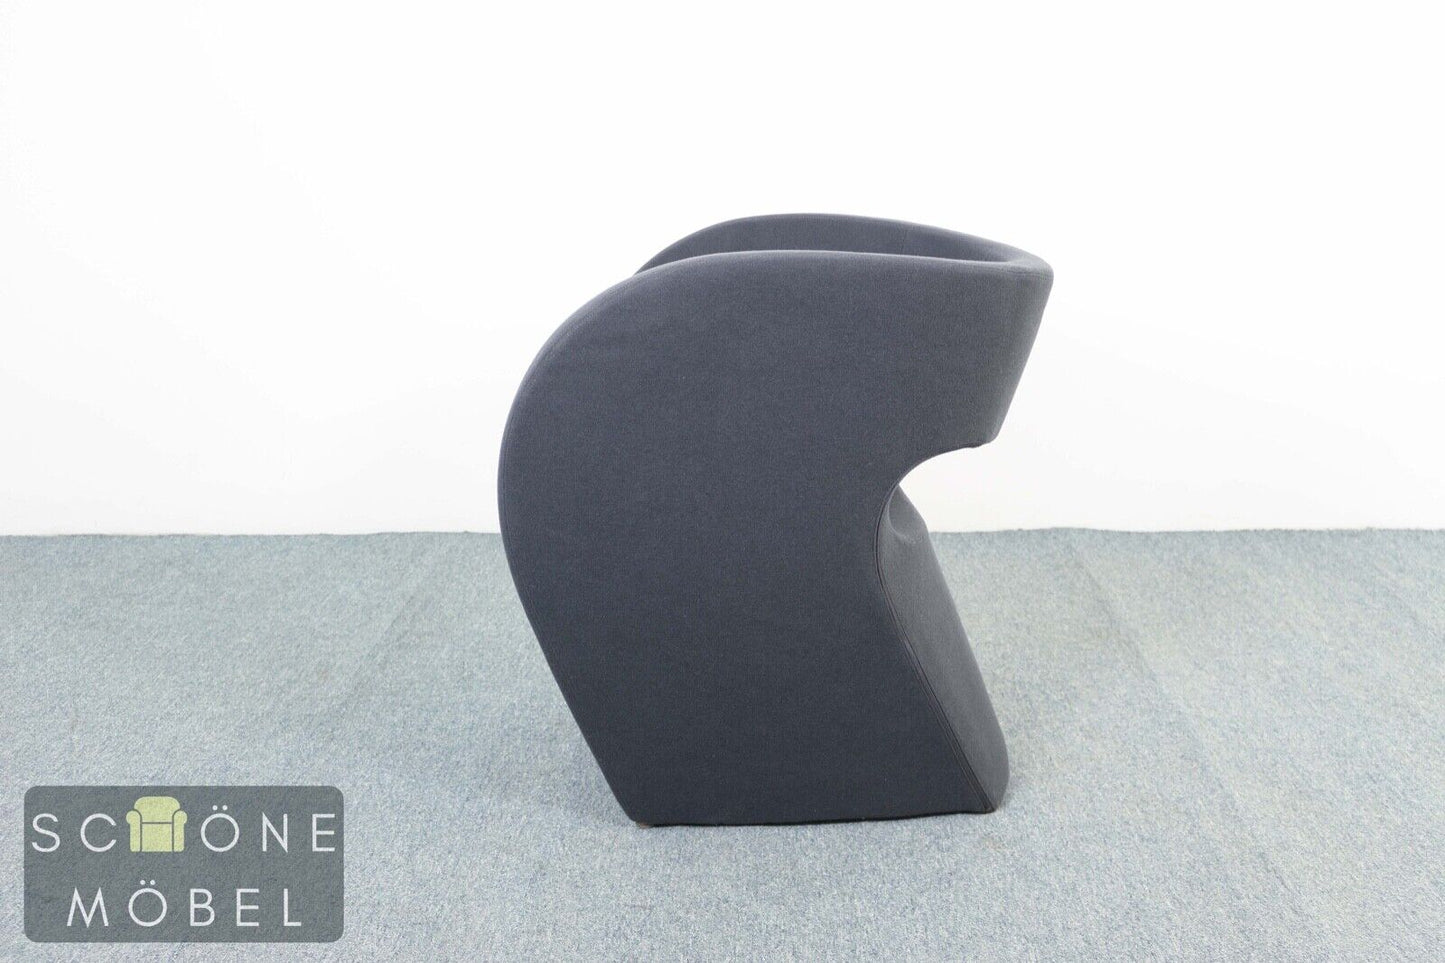 Stylische Lana Vergine Designer Sessel Modern Chair Made in Italy Armchair Stuhl